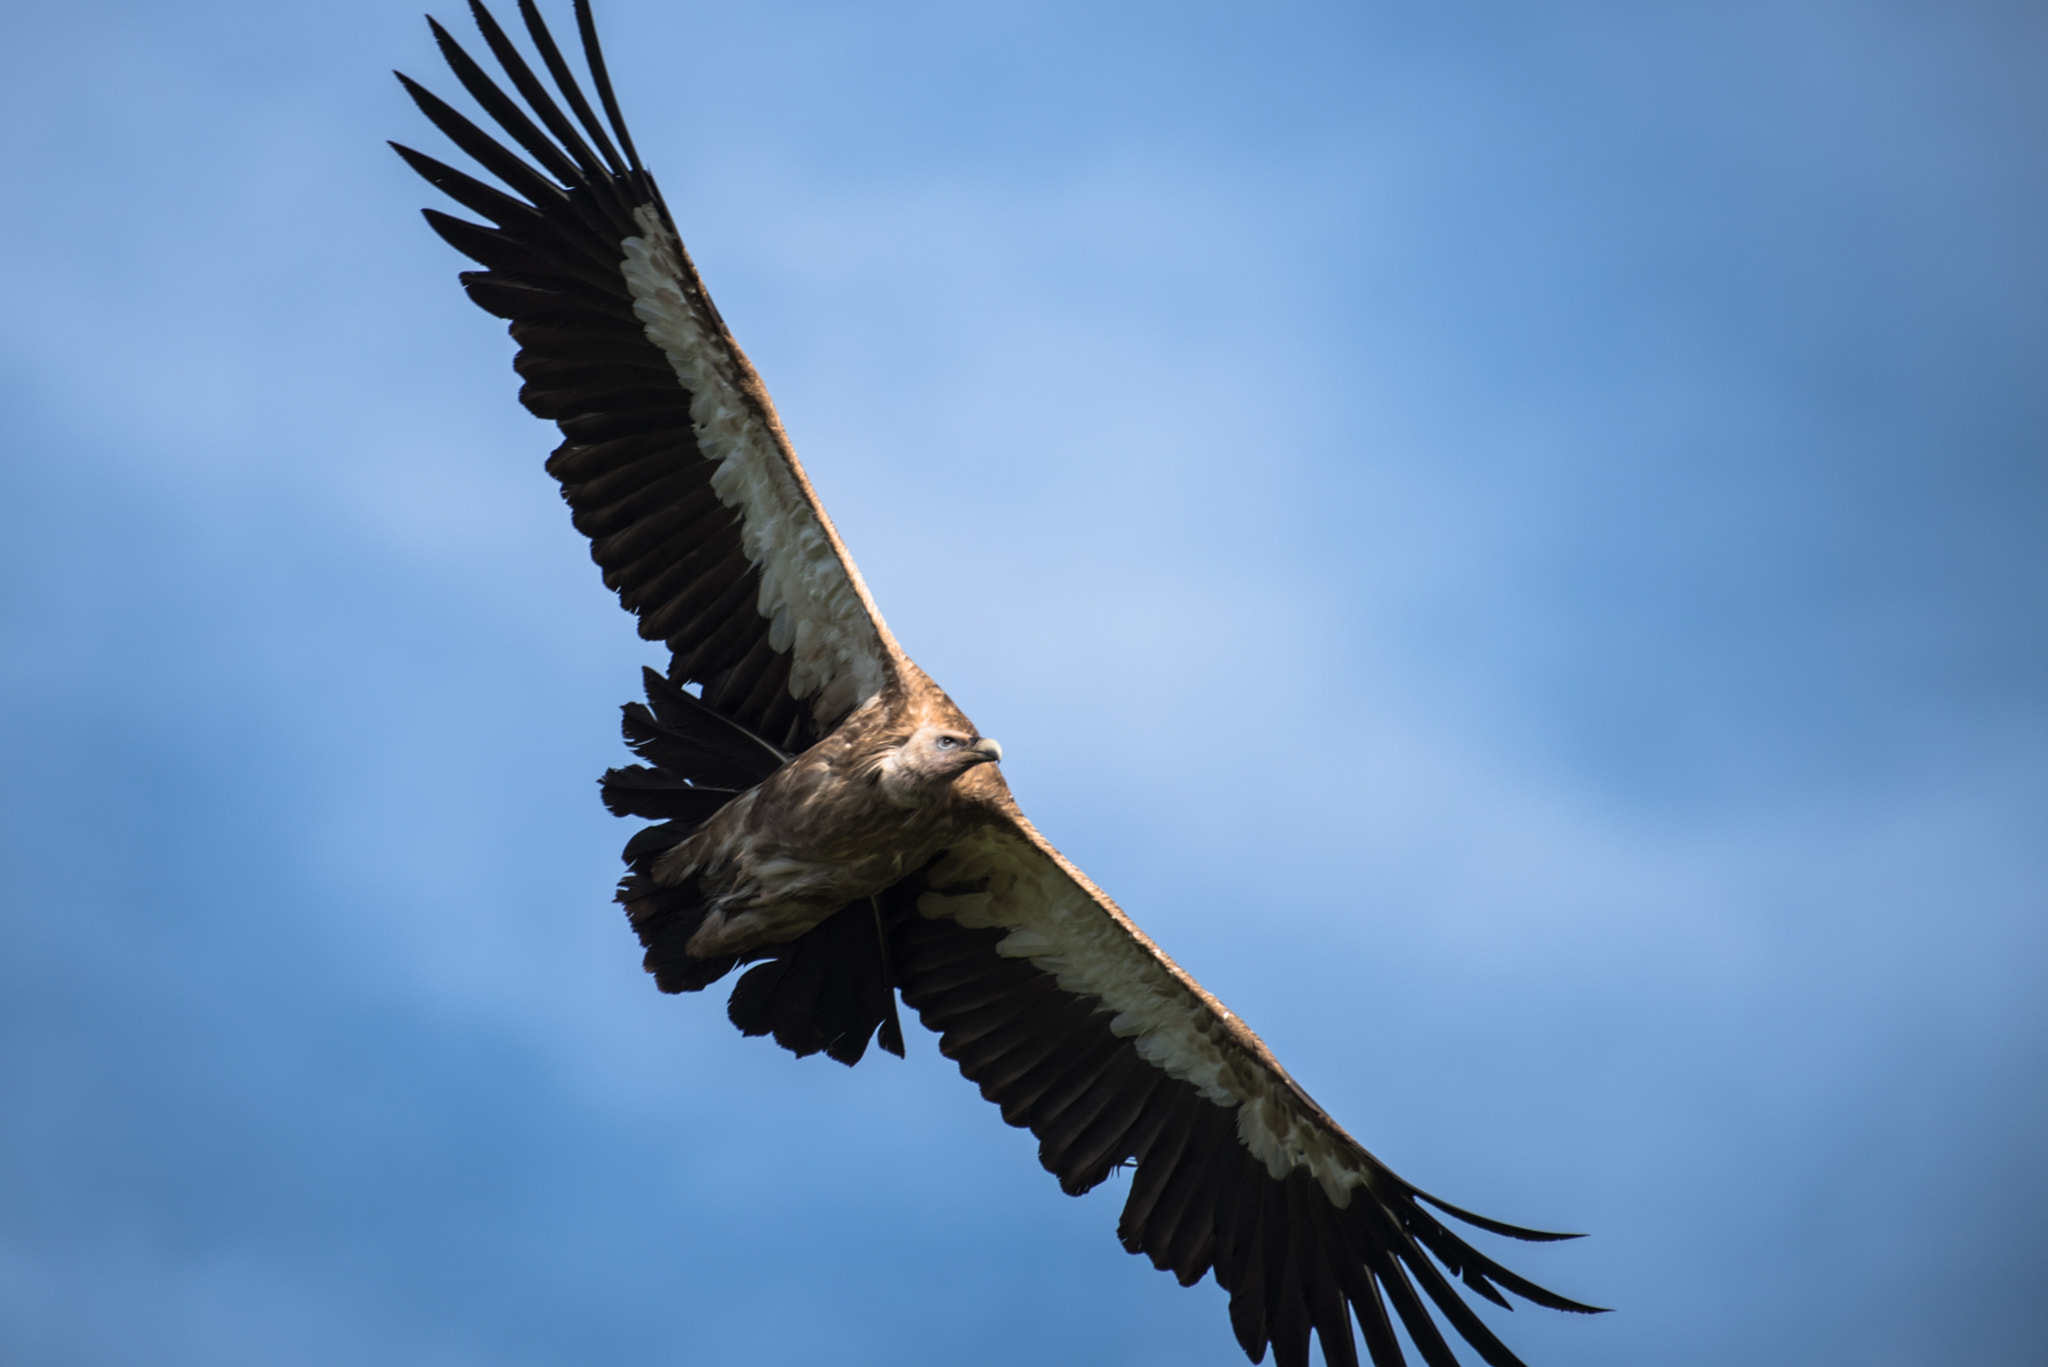 Nikon D810 sample photo. Himalayan vulture photography